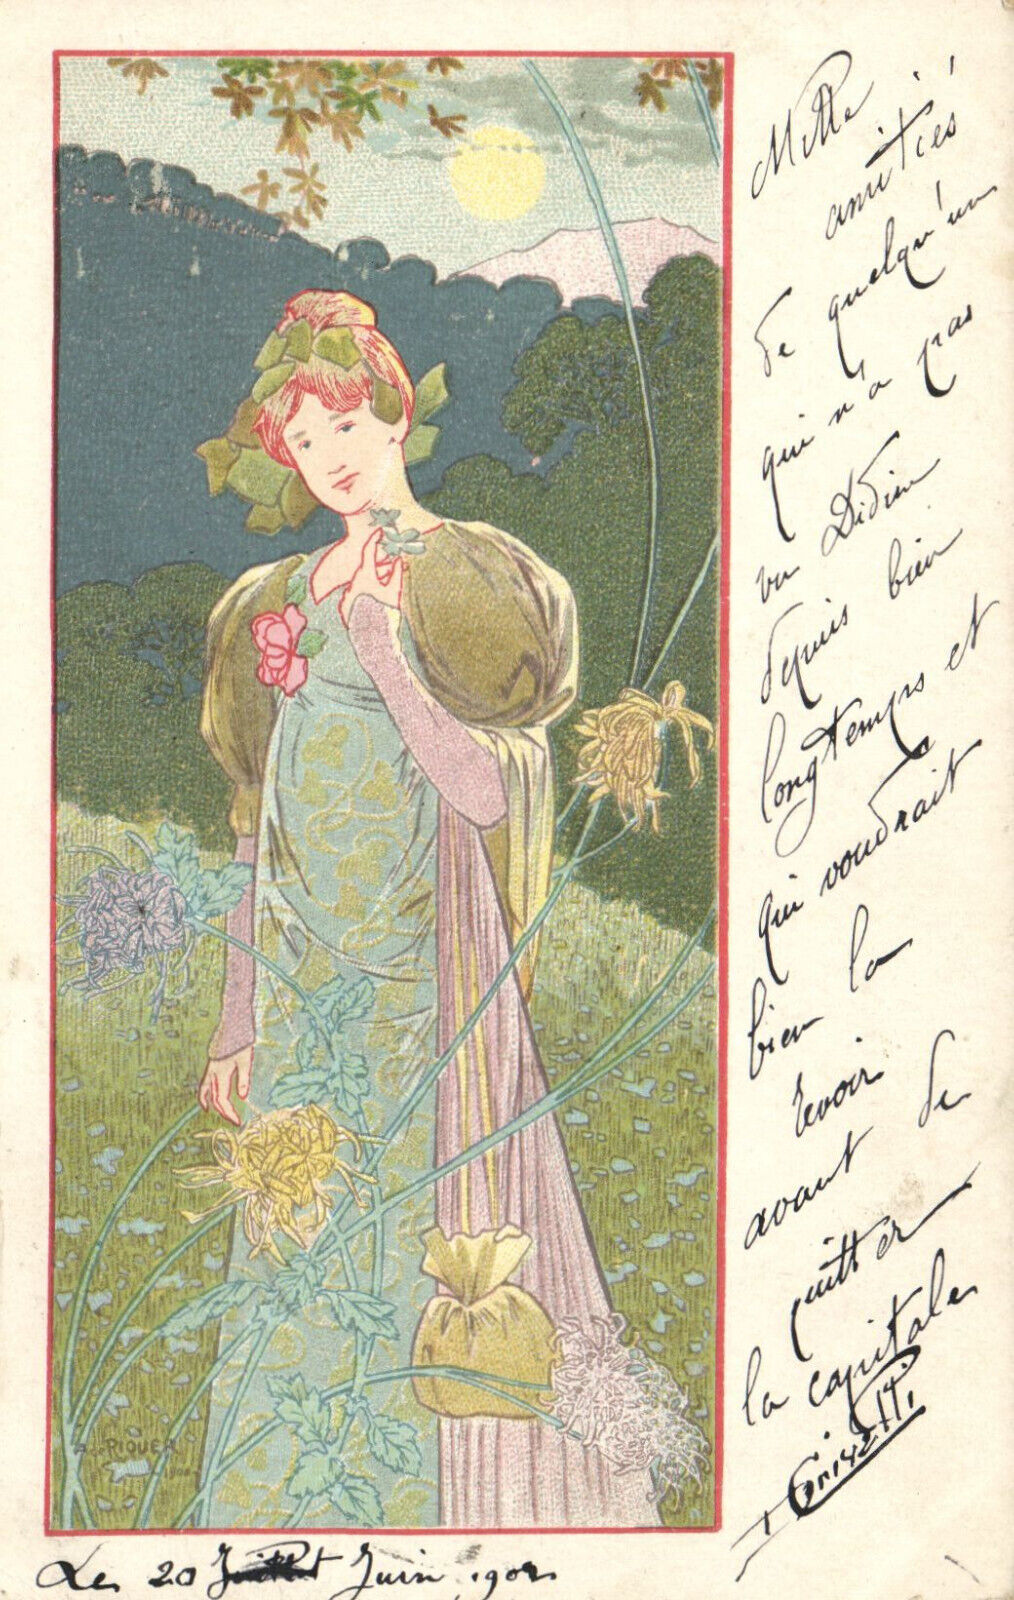 PC ARTIST SIGNED, RIQUER, ART NOUVEAU, FLOWERS, Vintage Postcard (b52162)